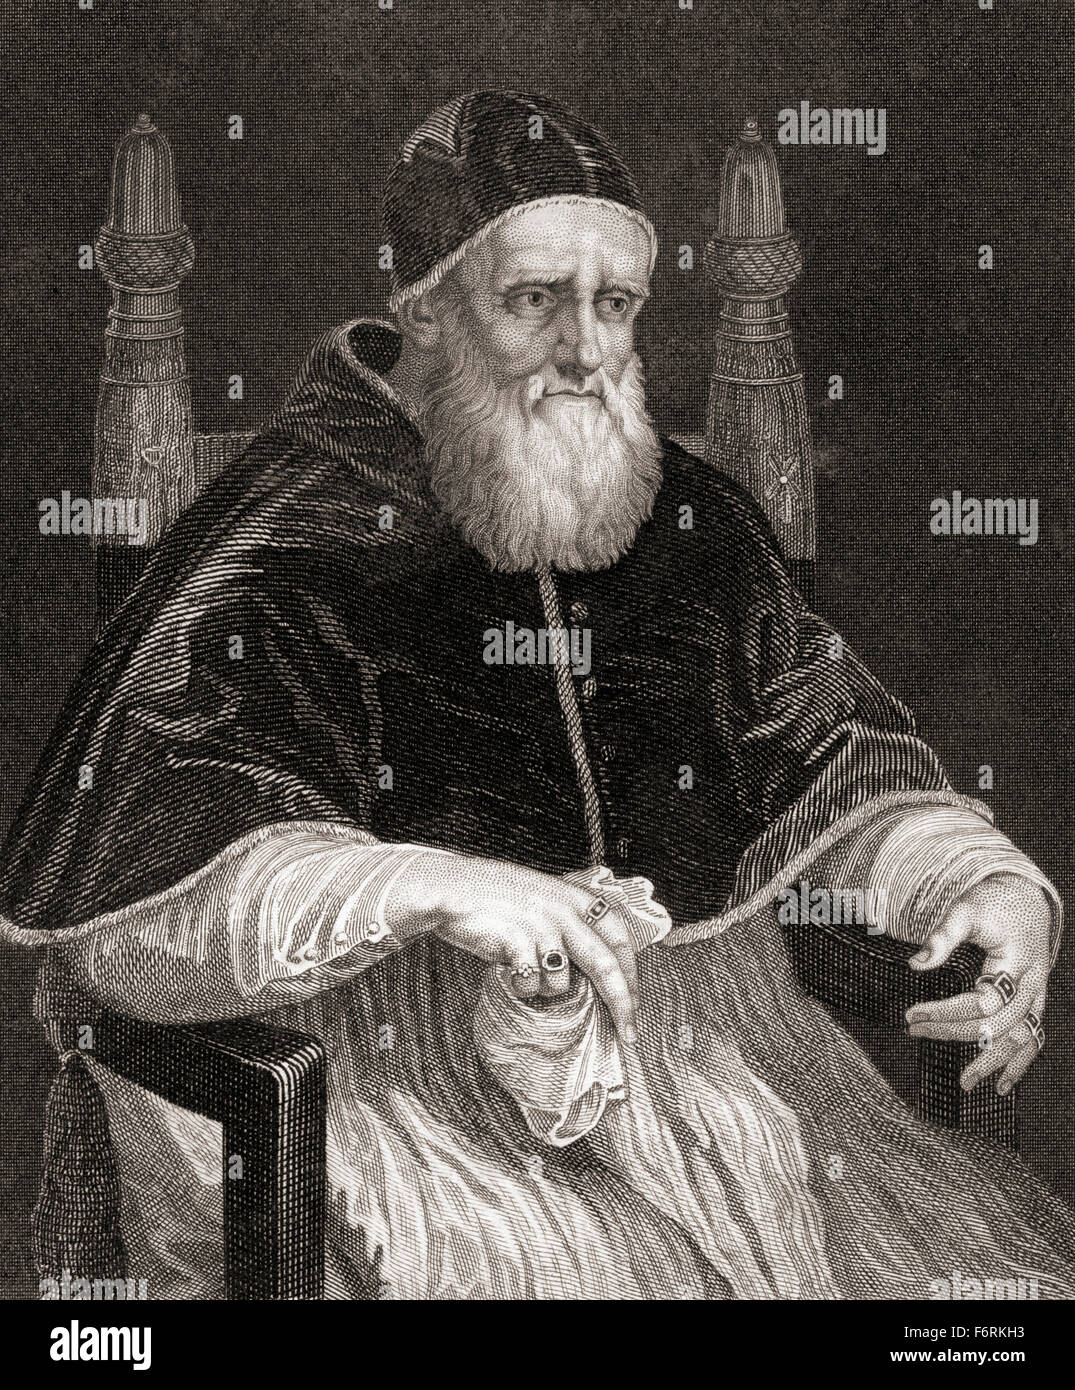 Pope Julius II, 1443 – 1513, nicknamed 'The Fearsome Pope' and 'The Warrior Pope', born Giuliano della Rovere. Stock Photo